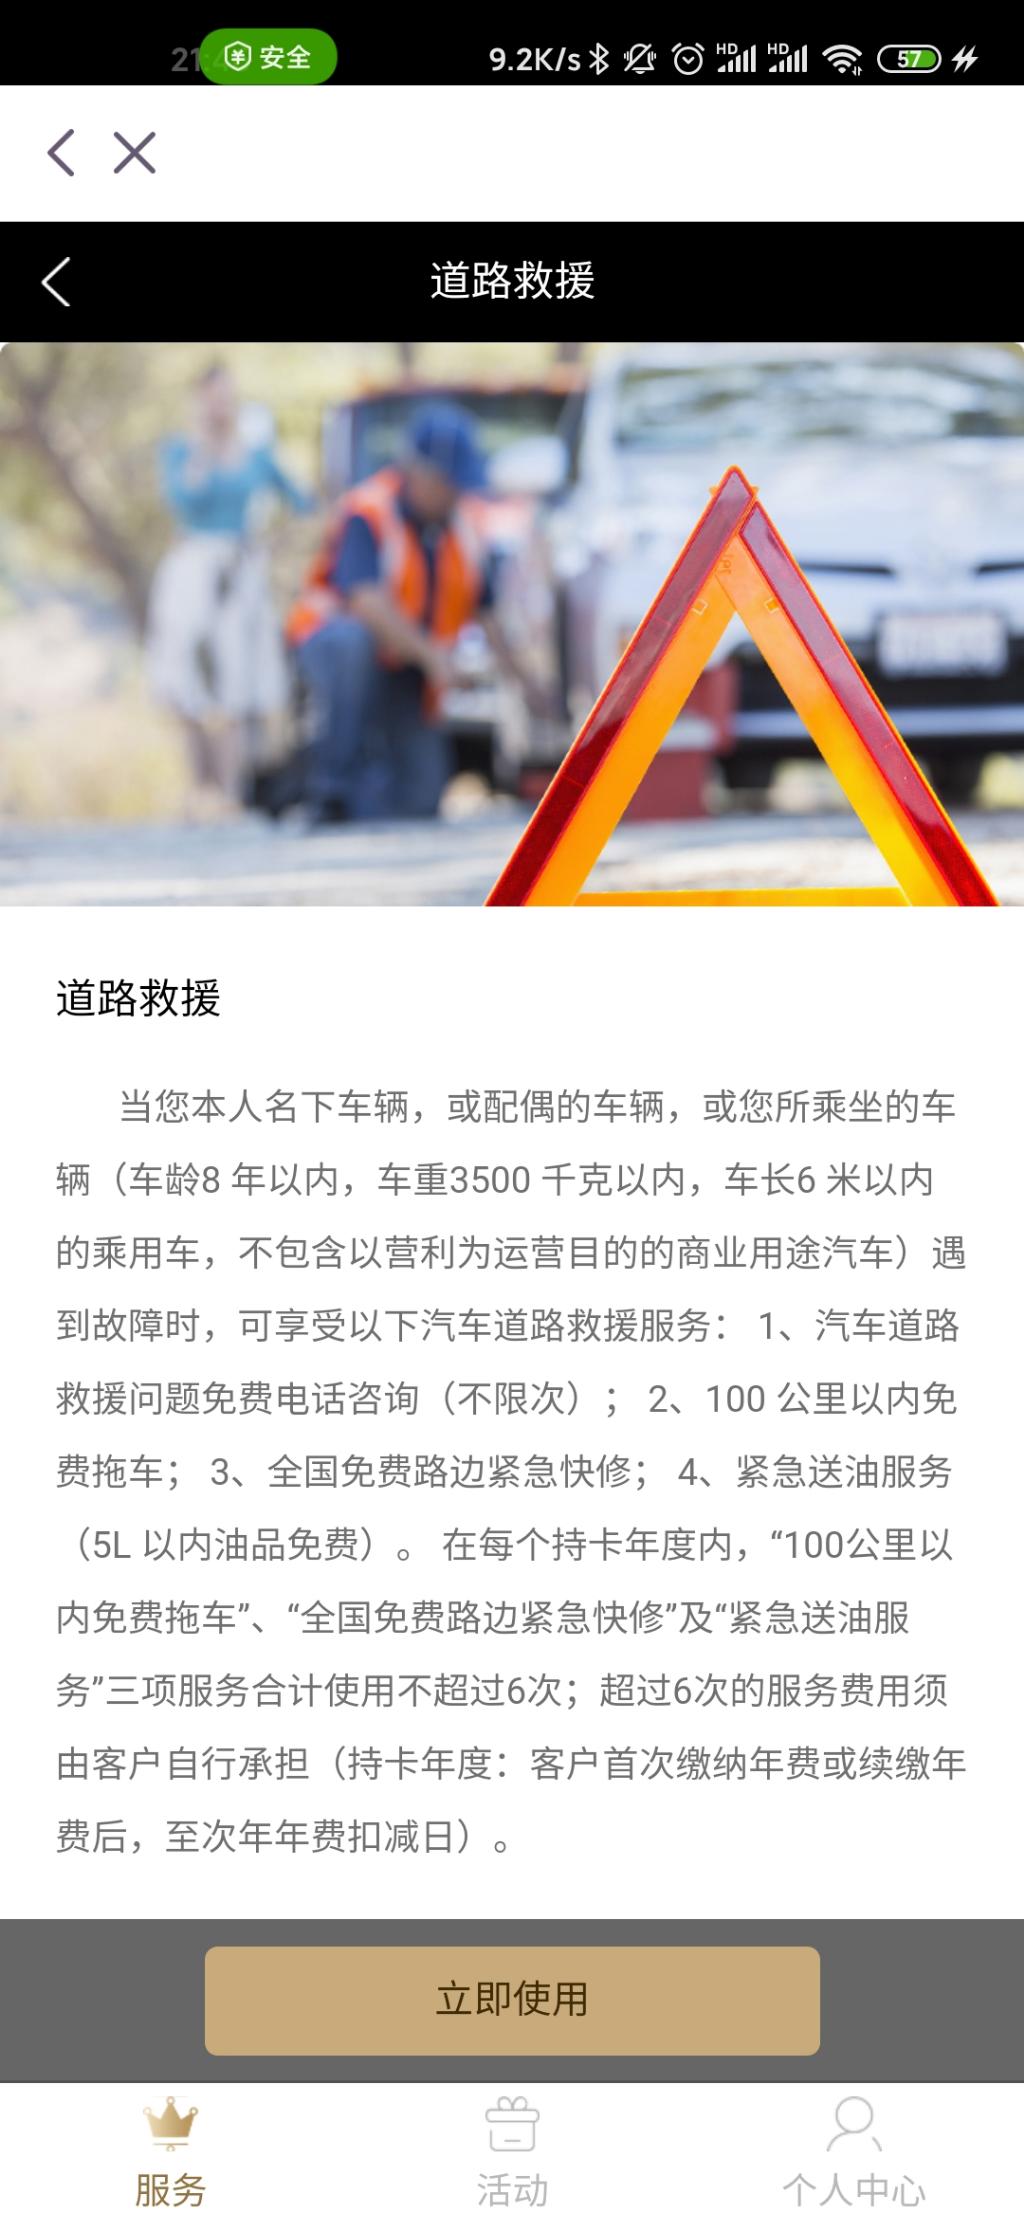 问-光大银行的拖车服务-惠小助(52huixz.com)